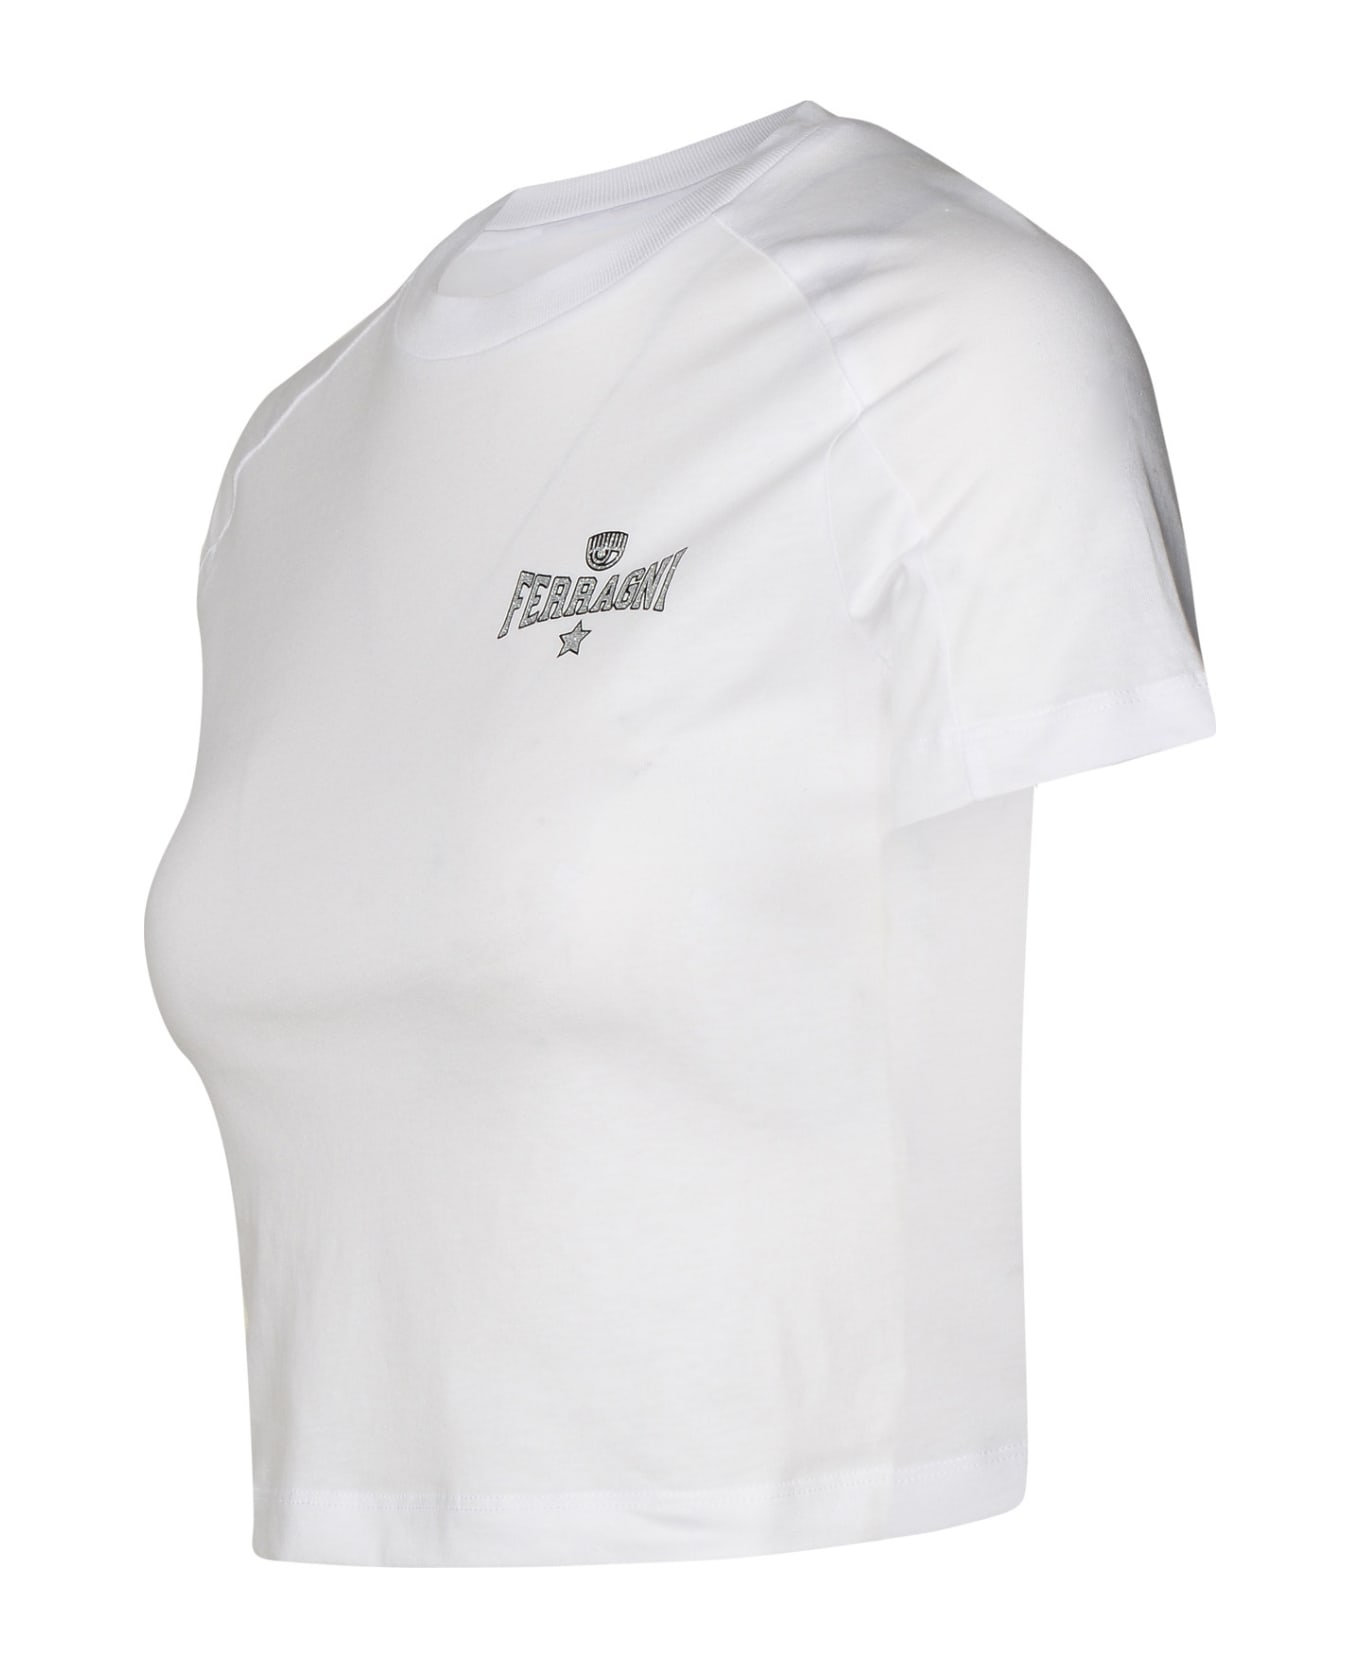 Chiara Ferragni White Cotton T-shirt - White